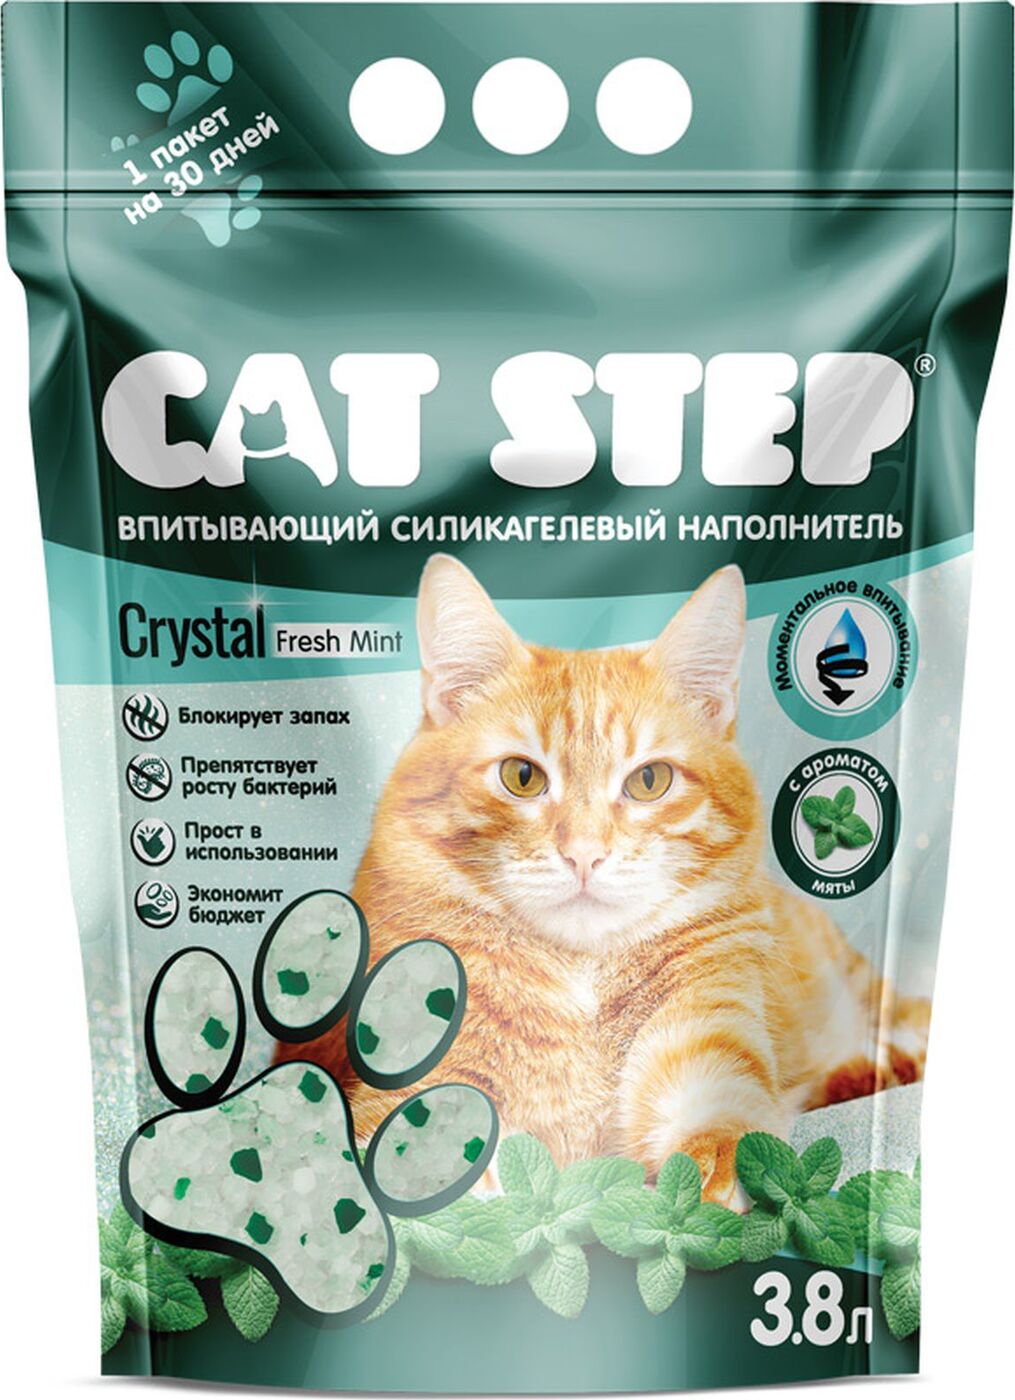 Впитывающий наполнитель для кошек Cat Step Crystal Fresh силикагелевый, мята, 3.8л